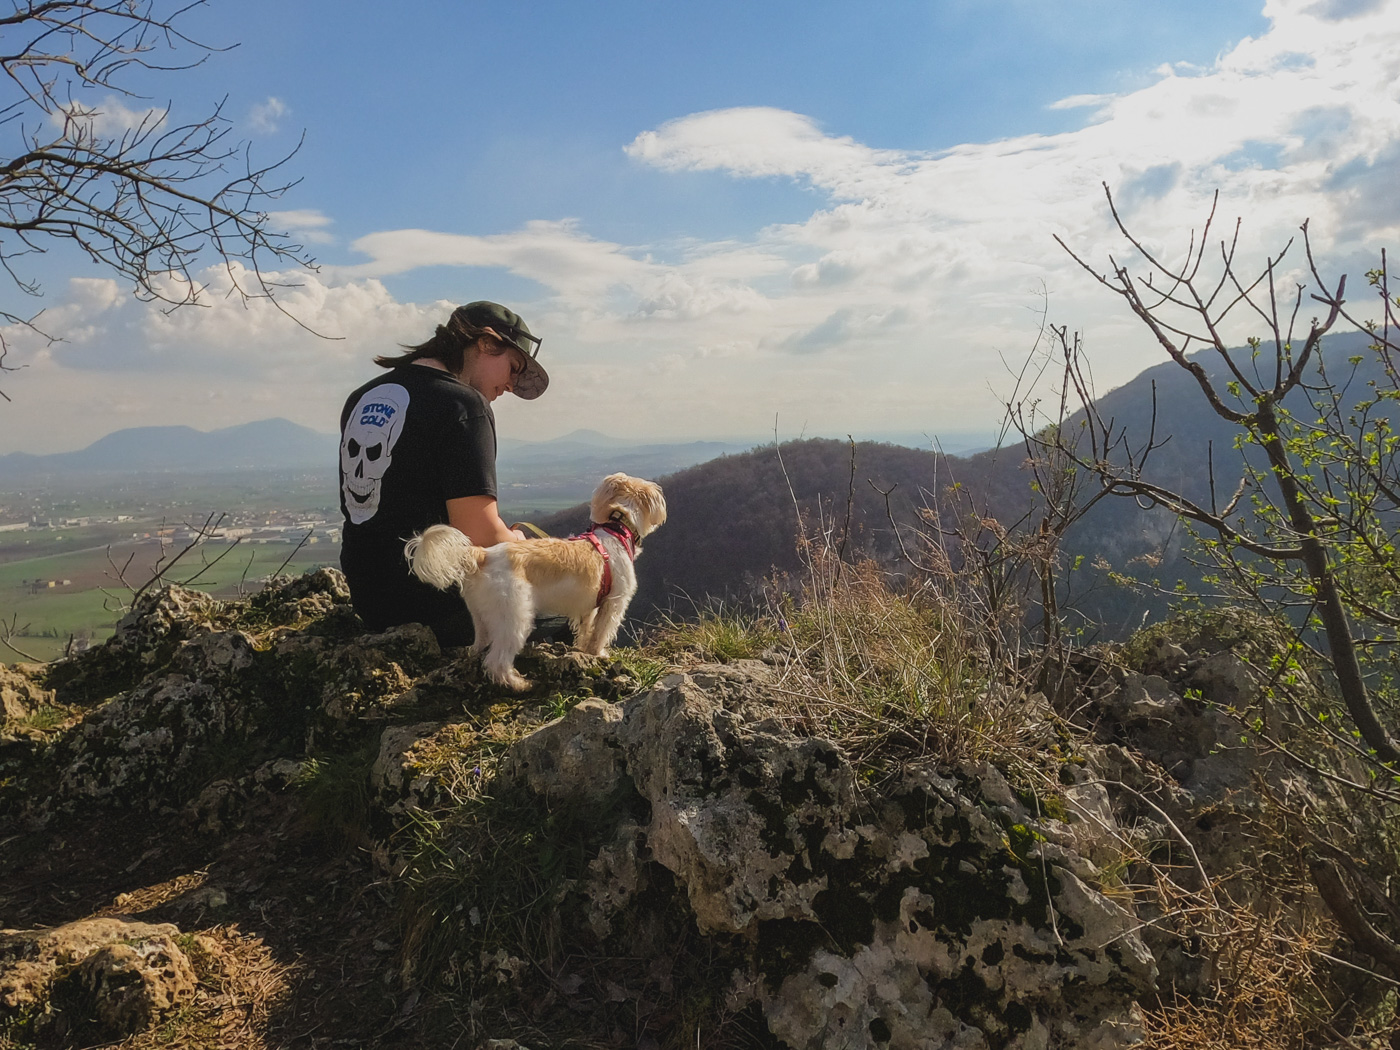 Easy hikes near Vicenza